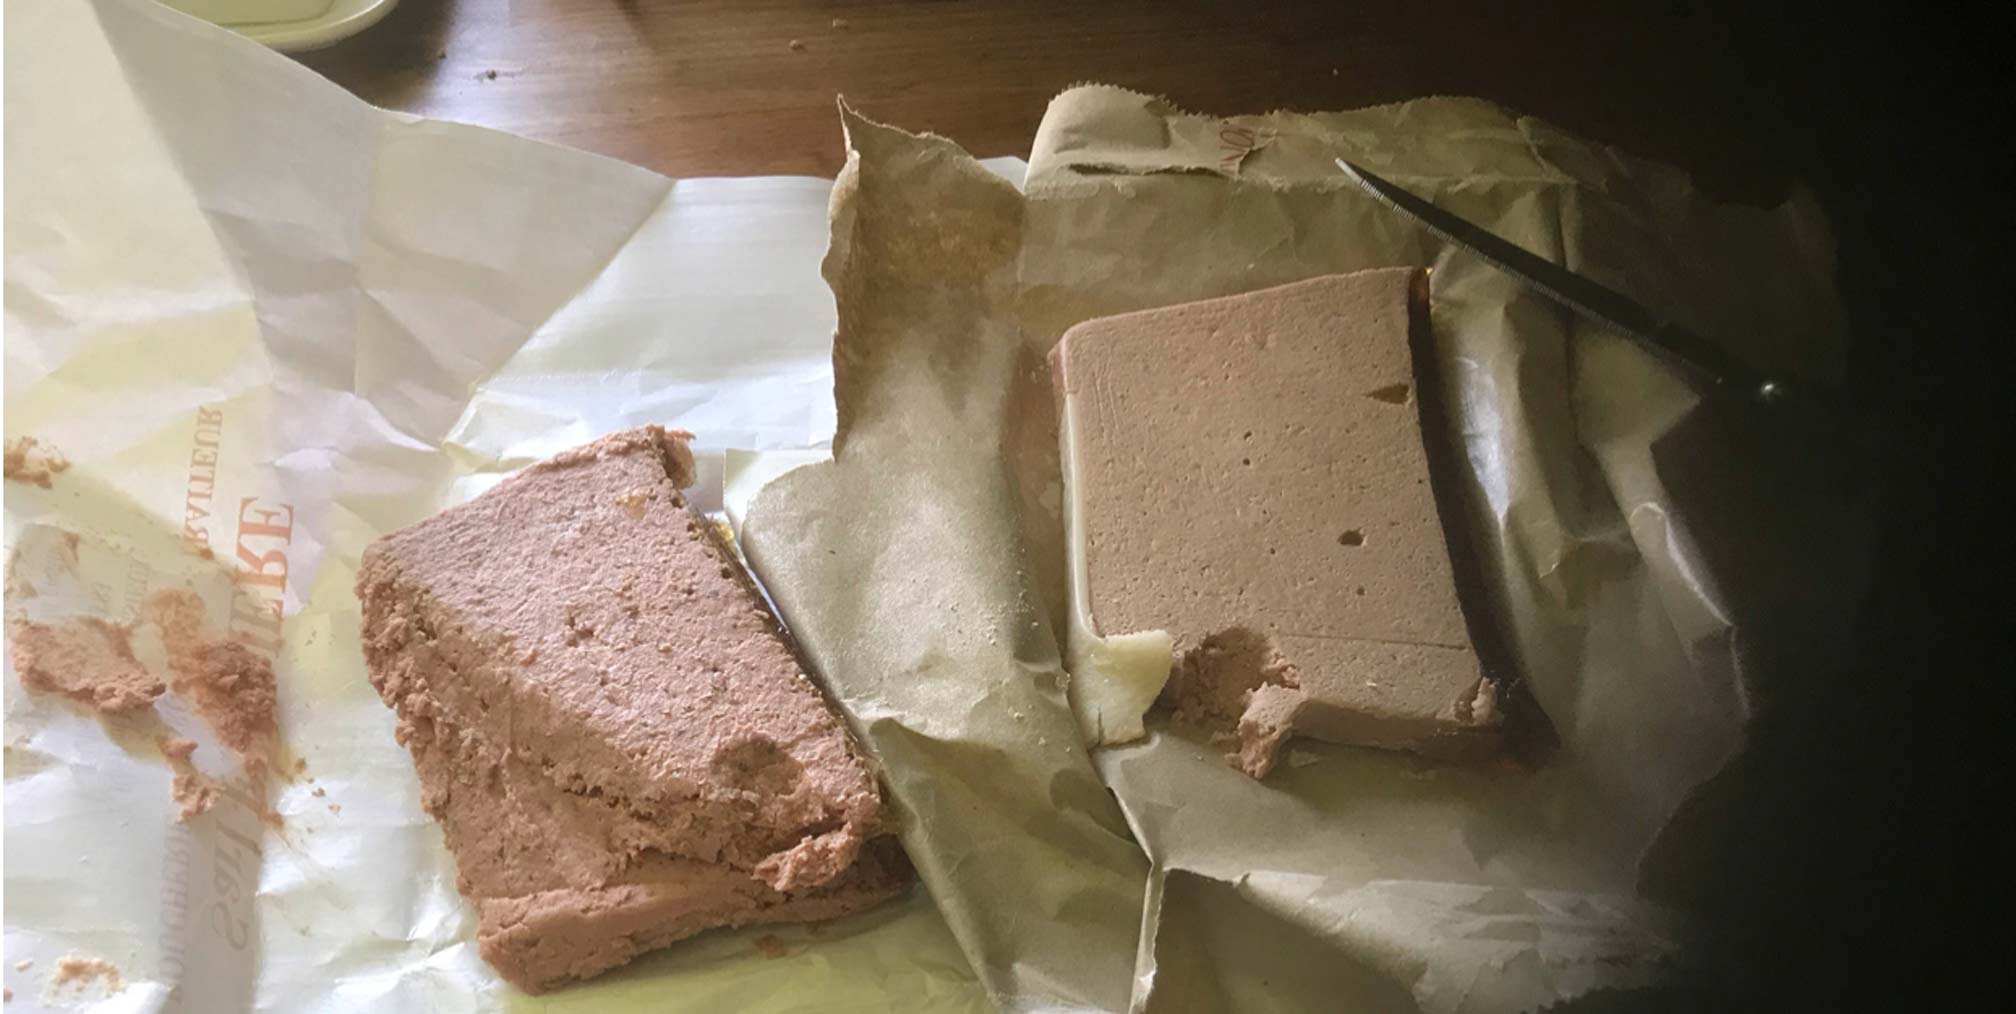 pâté de foie. two samples